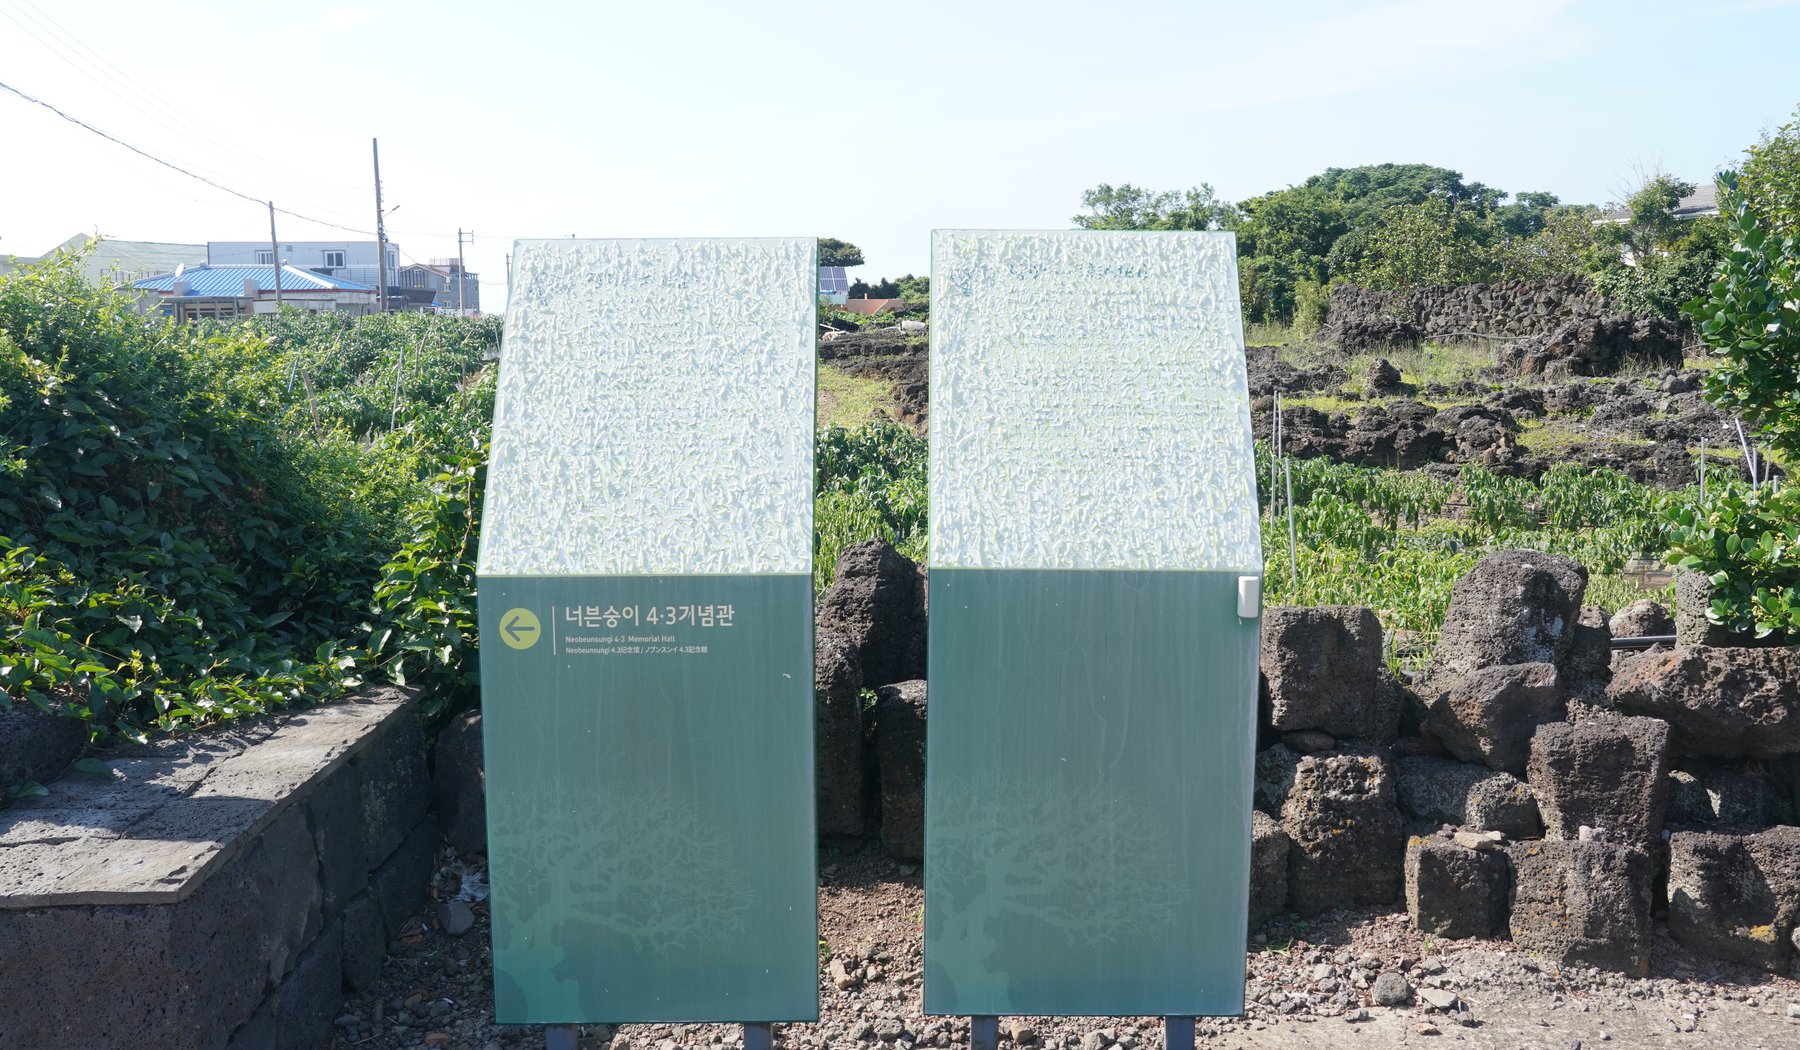 '당팟(4·3희생터)', '정지퐁낭 비념비' 유적지 안내판 모습. 안내판 내용을 알아보기 불가능할 정도로 훼손이 심했습니다. (2020년 7월 17일 촬영)